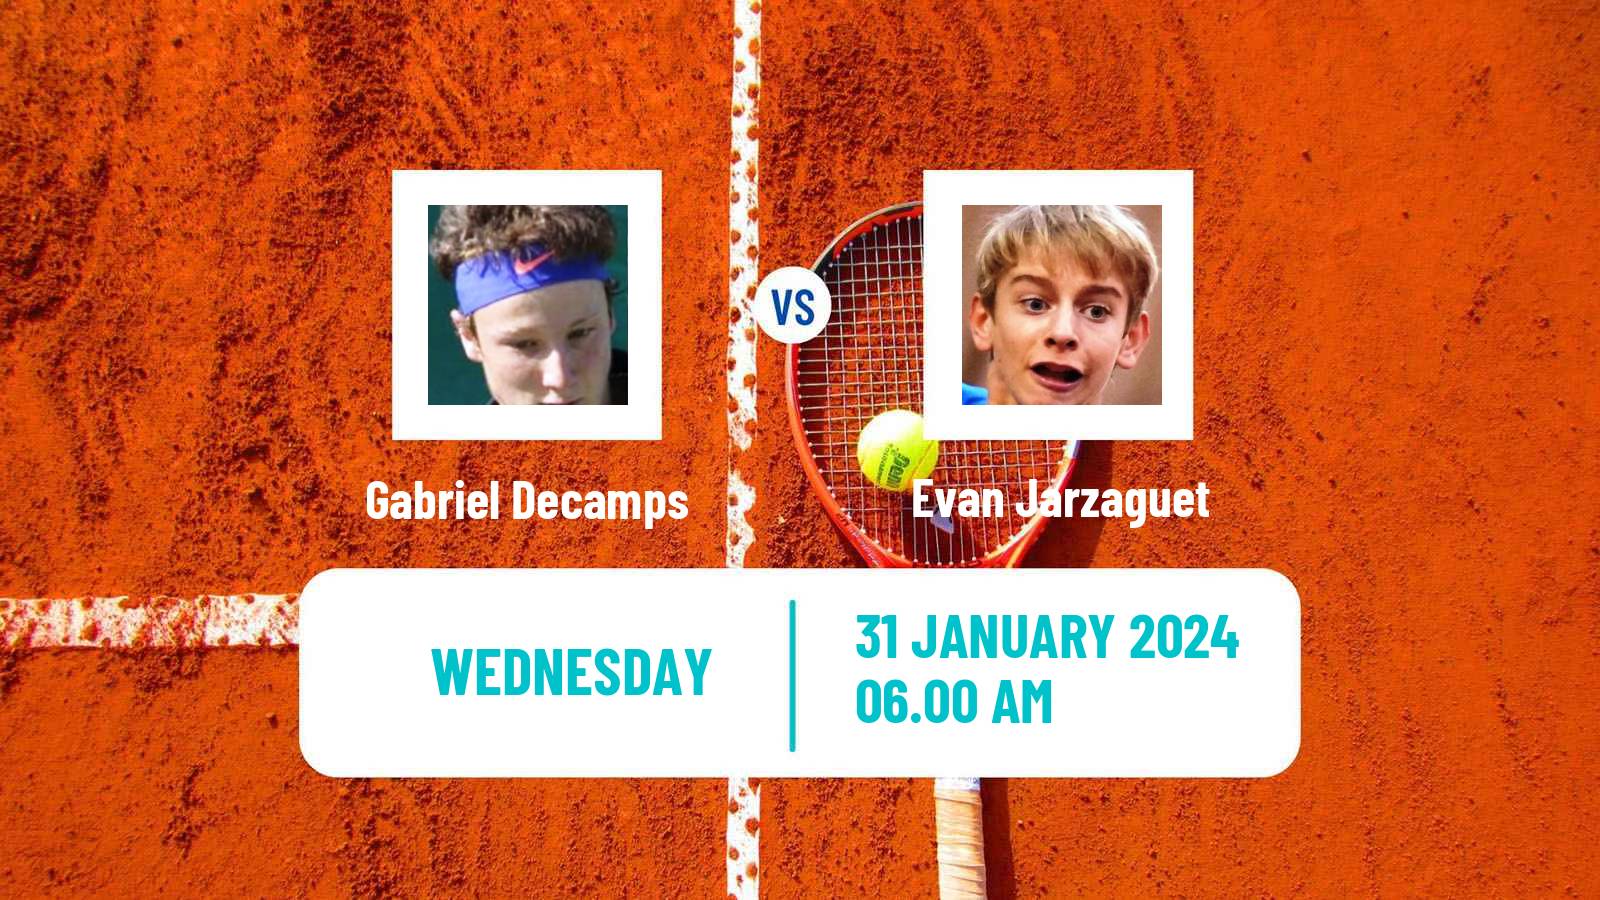 Tennis ITF M15 Veigy Foncenex Men Gabriel Decamps - Evan Jarzaguet